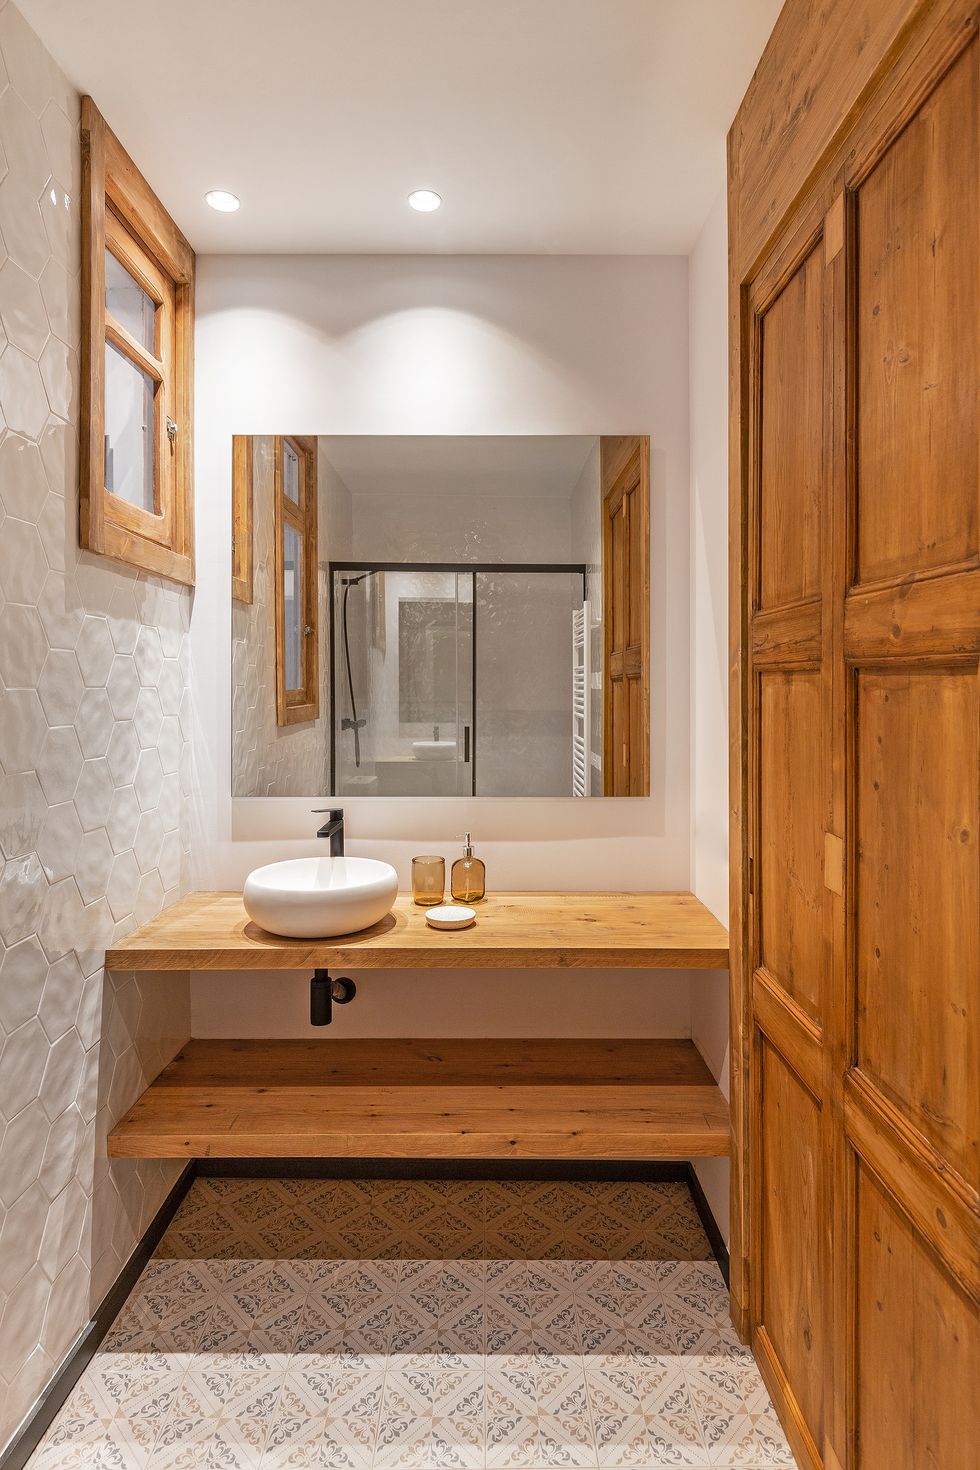 Trong phòng tắm, những cánh cửa, khung cửa gỗ tự nhiên được xếp liền với gạch lục giác sáng bóng ốp tường cùng bồn rửa hình bầu dục bằng sứ.